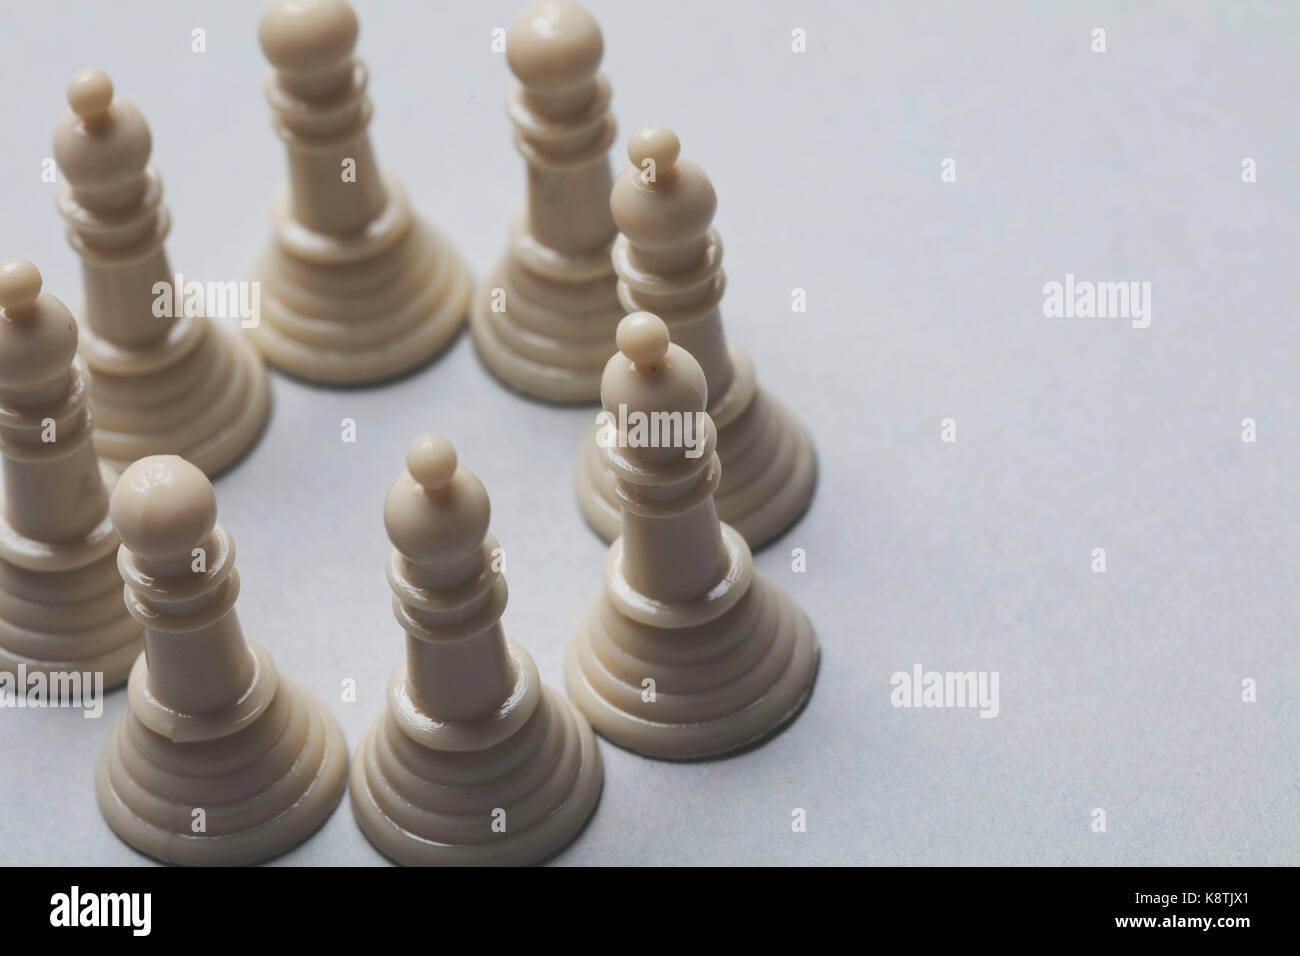 Schach Spiel Stücke auf einem grauen Hintergrund. Strategie Konzept Stockfoto